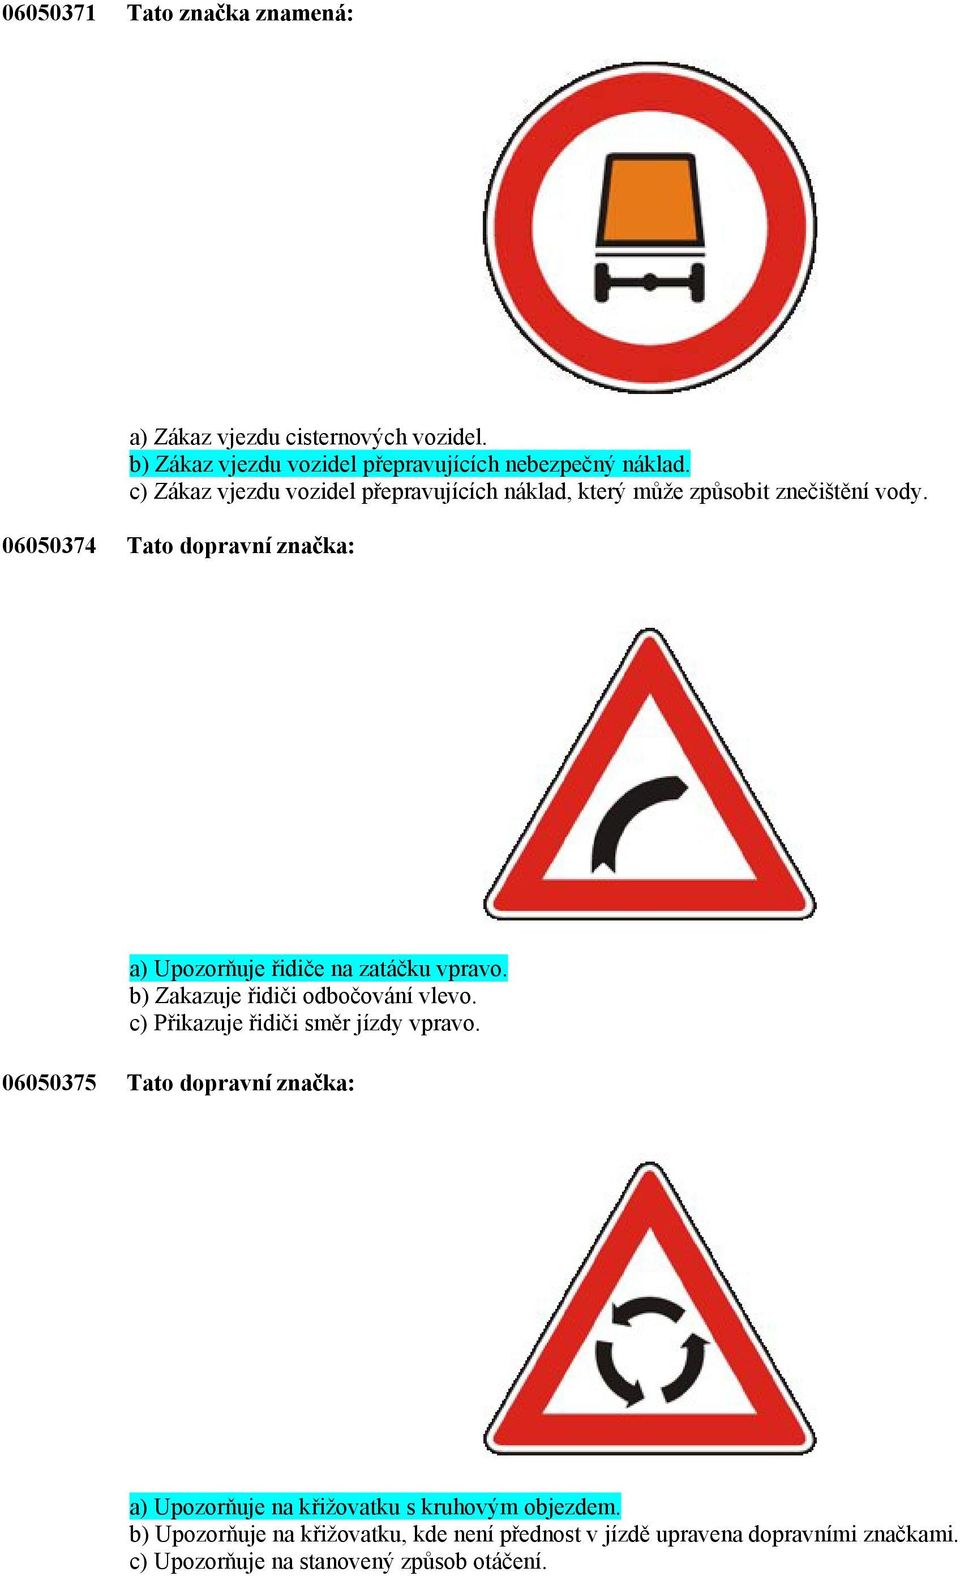 06050374 Tato dopravní značka: a) Upozorňuje řidiče na zatáčku vpravo. b) Zakazuje řidiči odbočování vlevo.